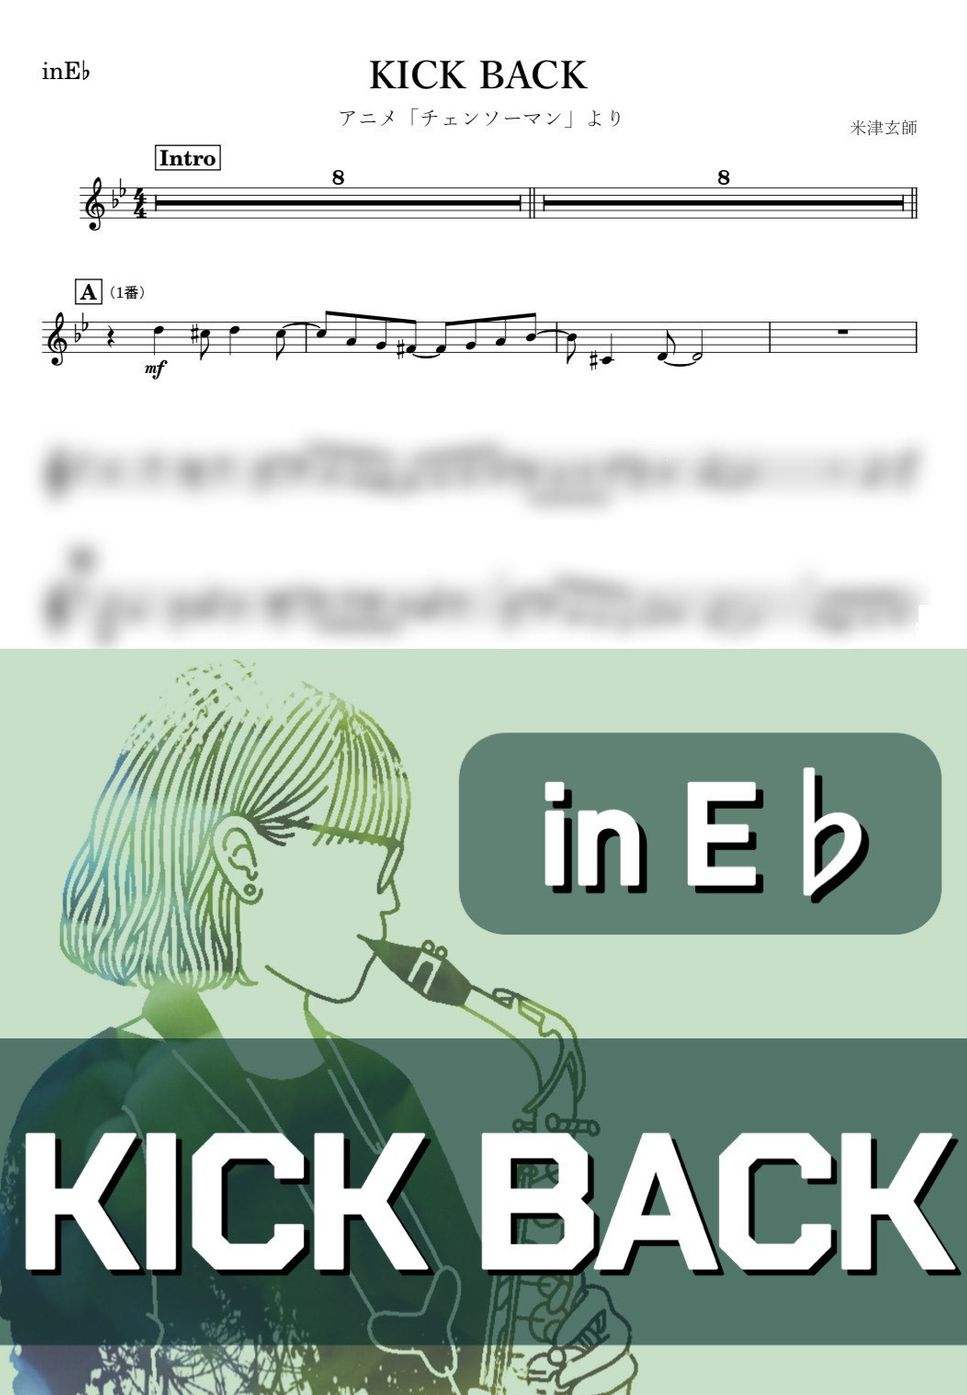 米津玄師 - KICK BACK (E♭) by kanamusic